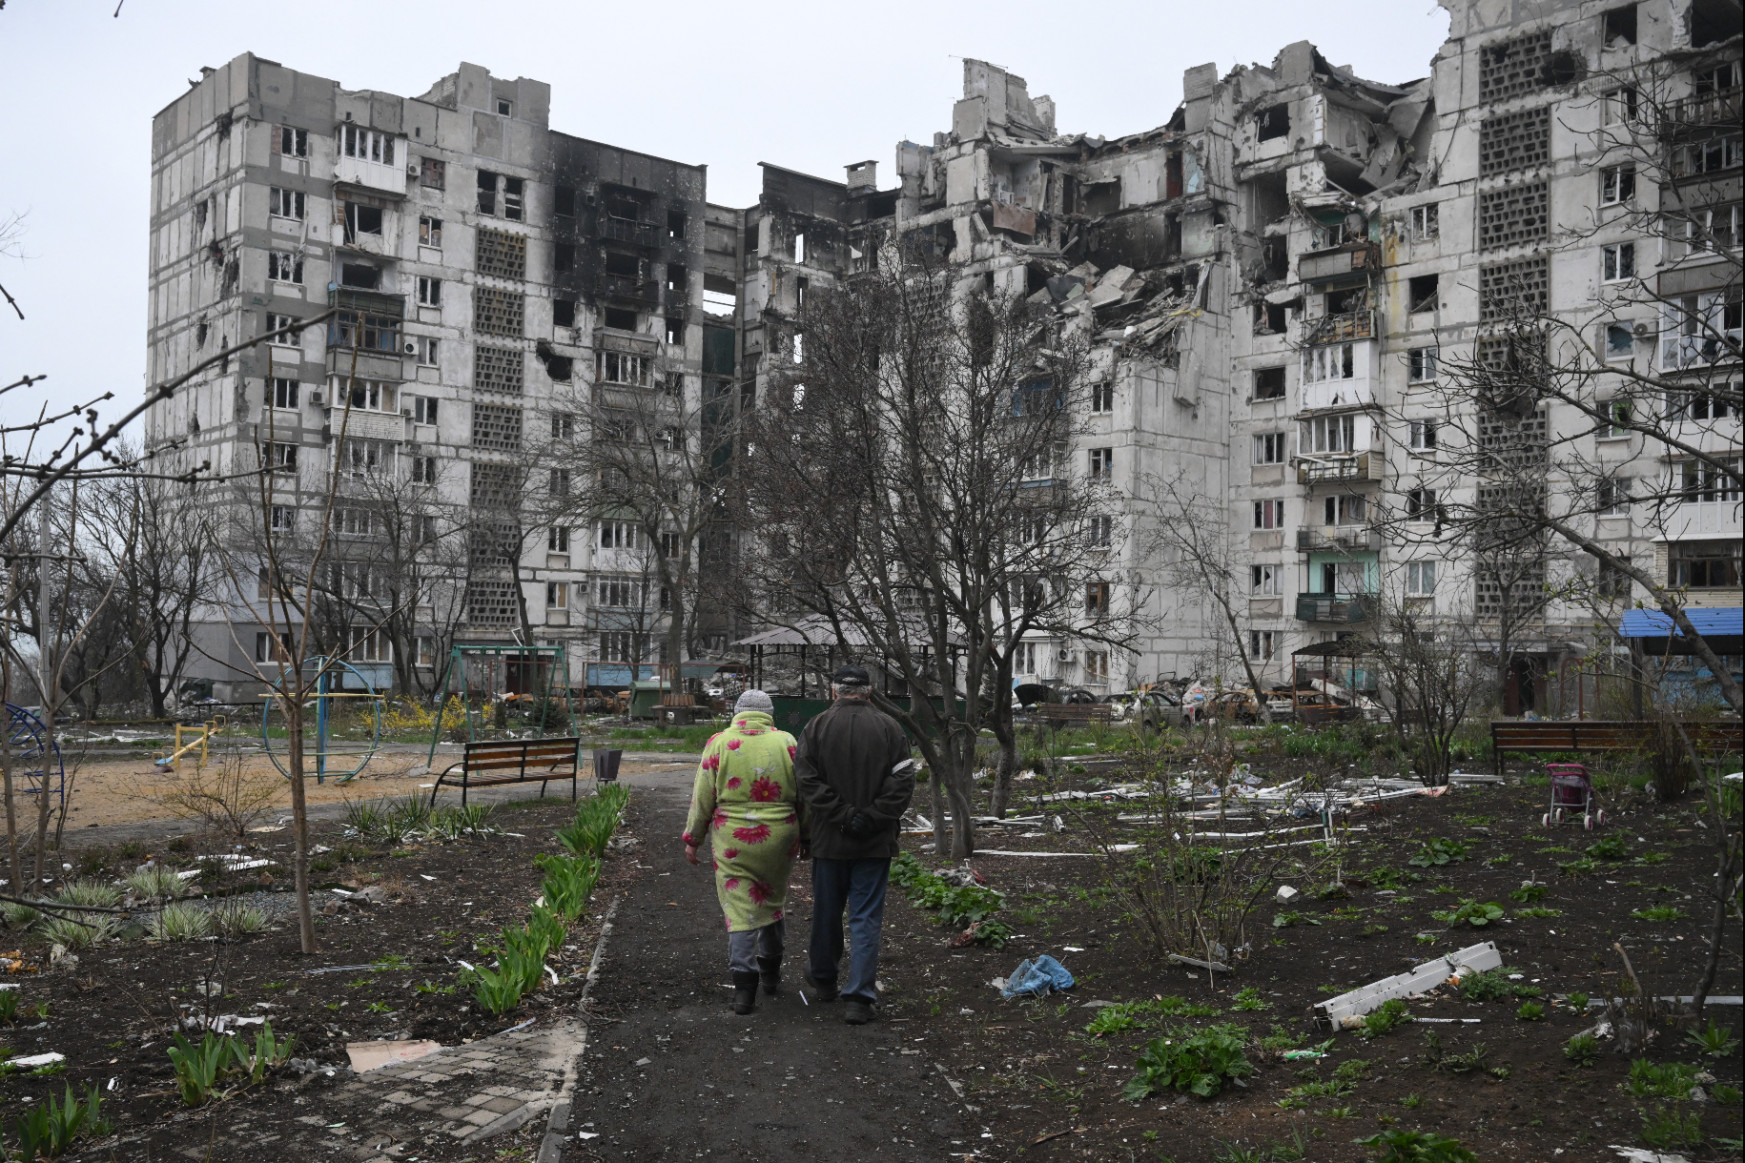 Minél hamarabb, minél látványosabb győzelmet akarnak elérni az oroszok a Donbaszban